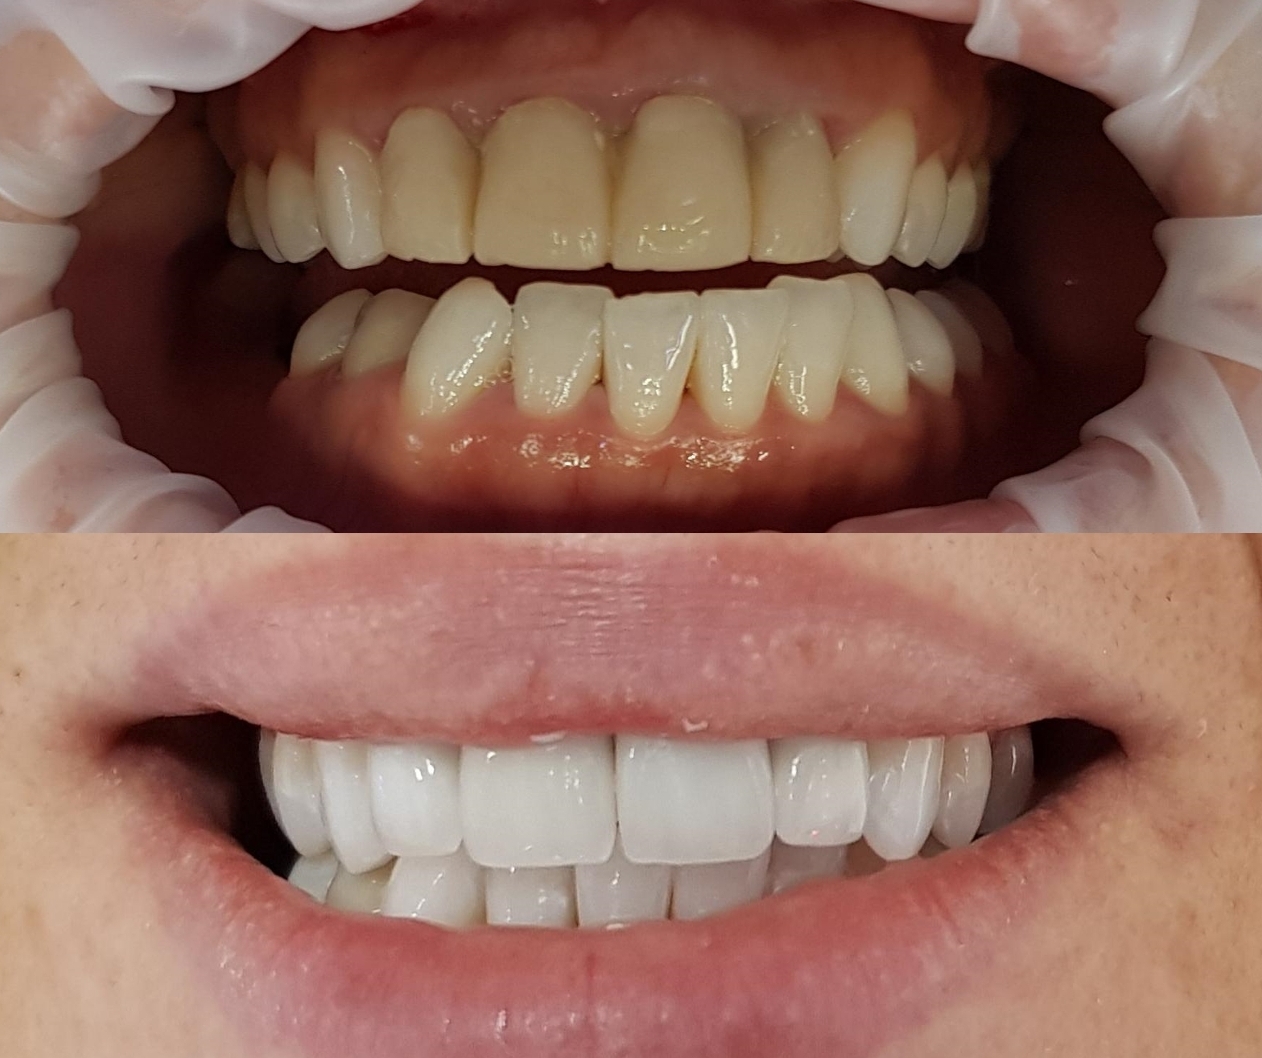 Couronne dentaire céramique - Pour un résultat naturel